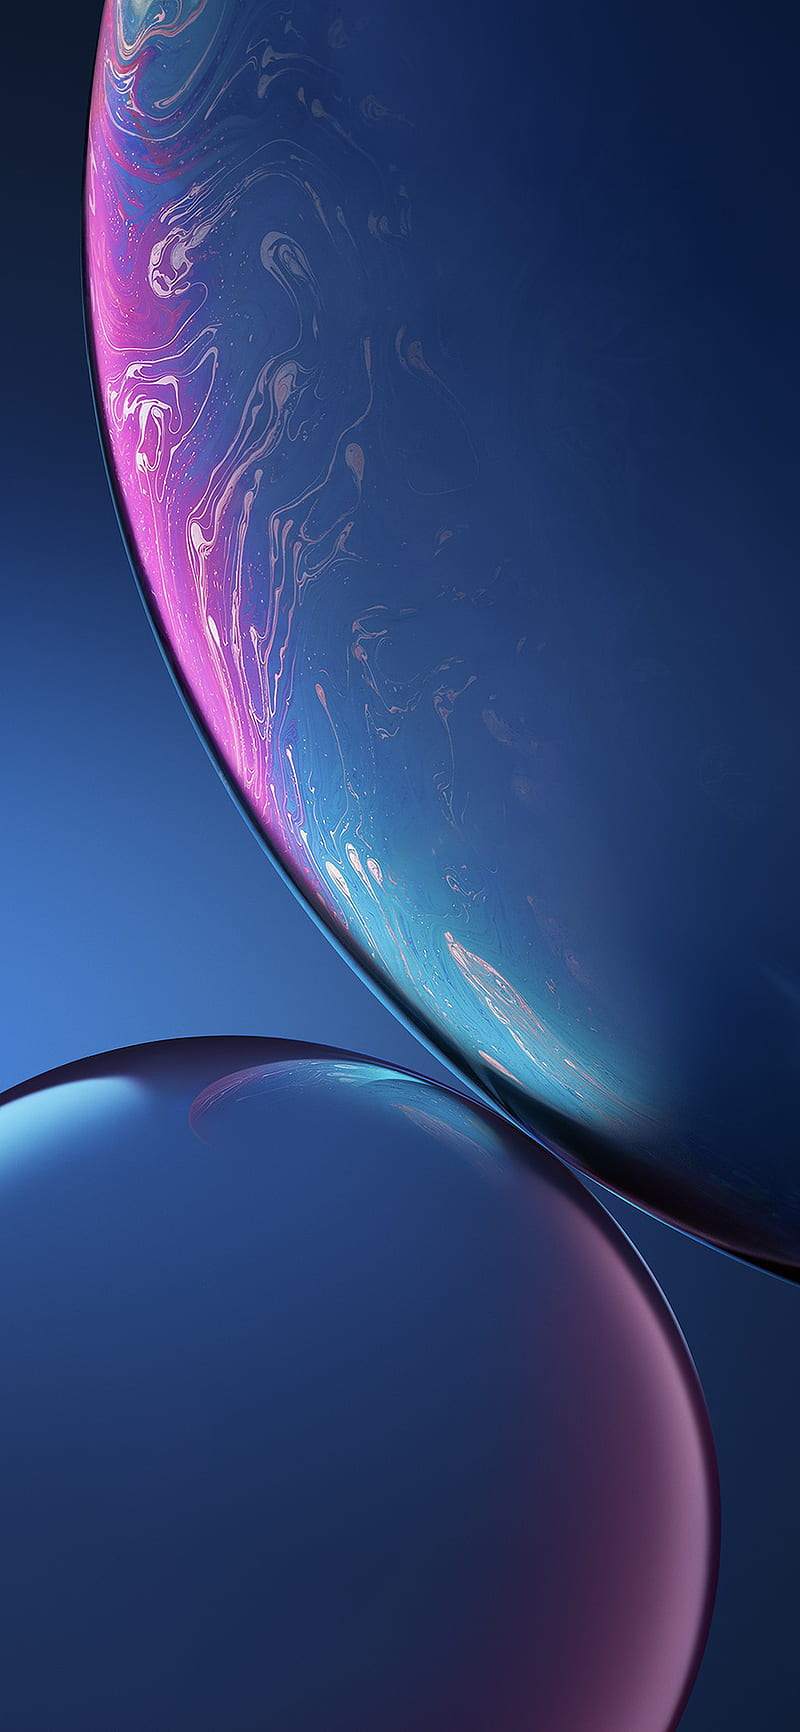 Chào mừng chiếc điện thoại iPhone XS Max của bạn với những hình nền HD iPhone XS Max wallpapers đẹp như mơ, ngất ngây và vô cùng độc đáo. Cảm giác thăng hoa chưa từng có khi nhìn vào màn hình xinh đẹp với độ phân giải cực cao.